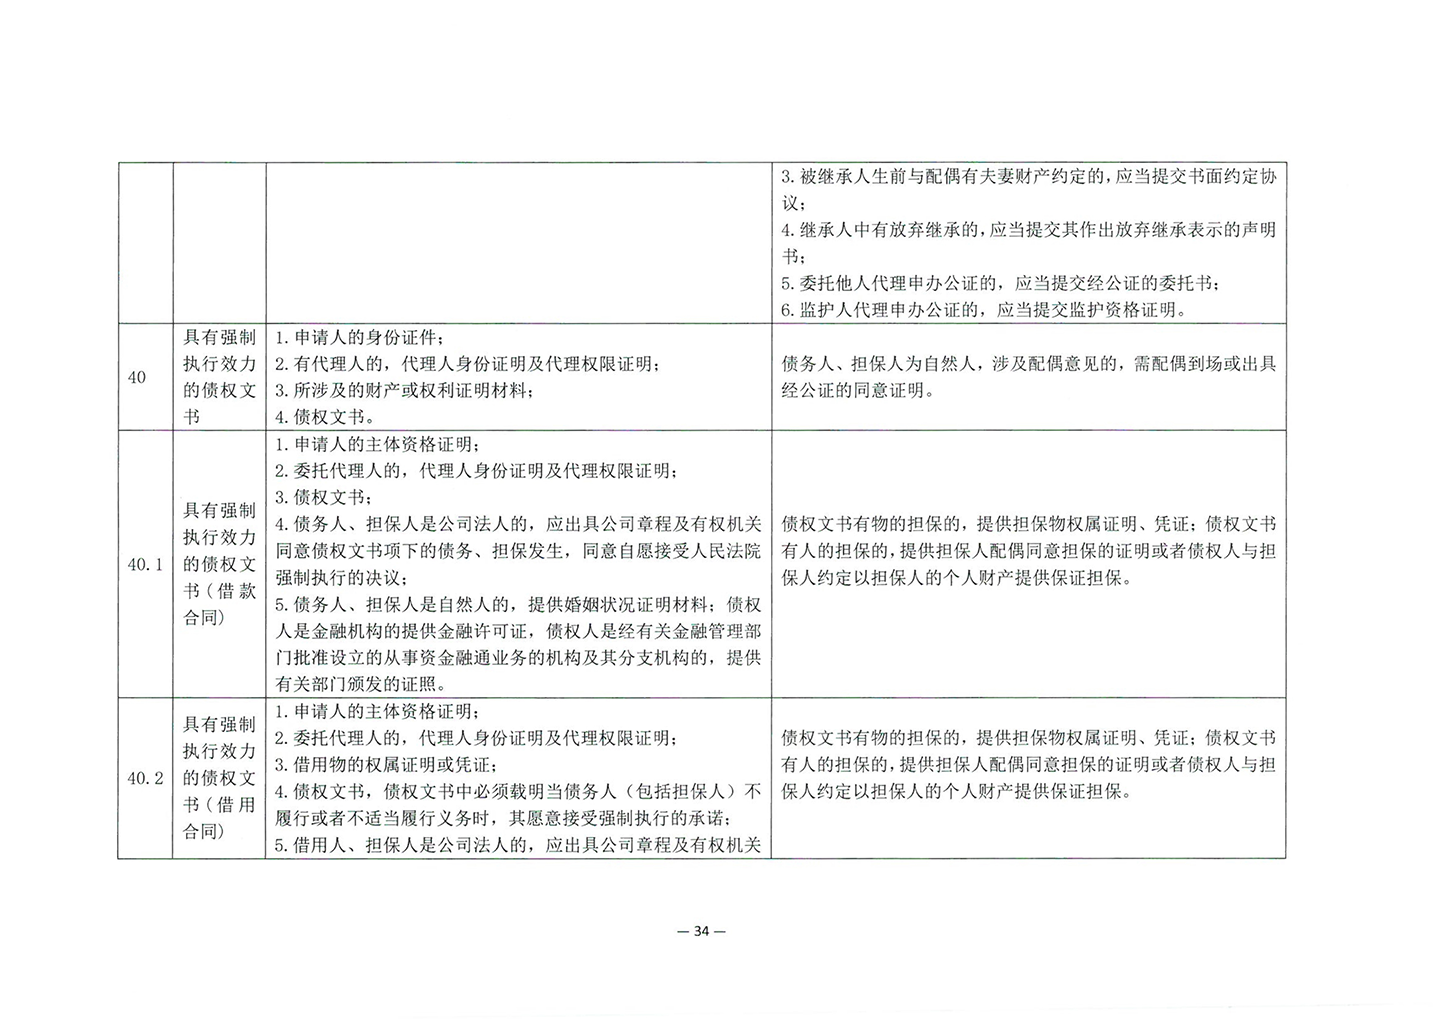 010417243466_03北京市公证协会关于印发《公证机构受理公证事项事务申请证明材料清单》的通知_36